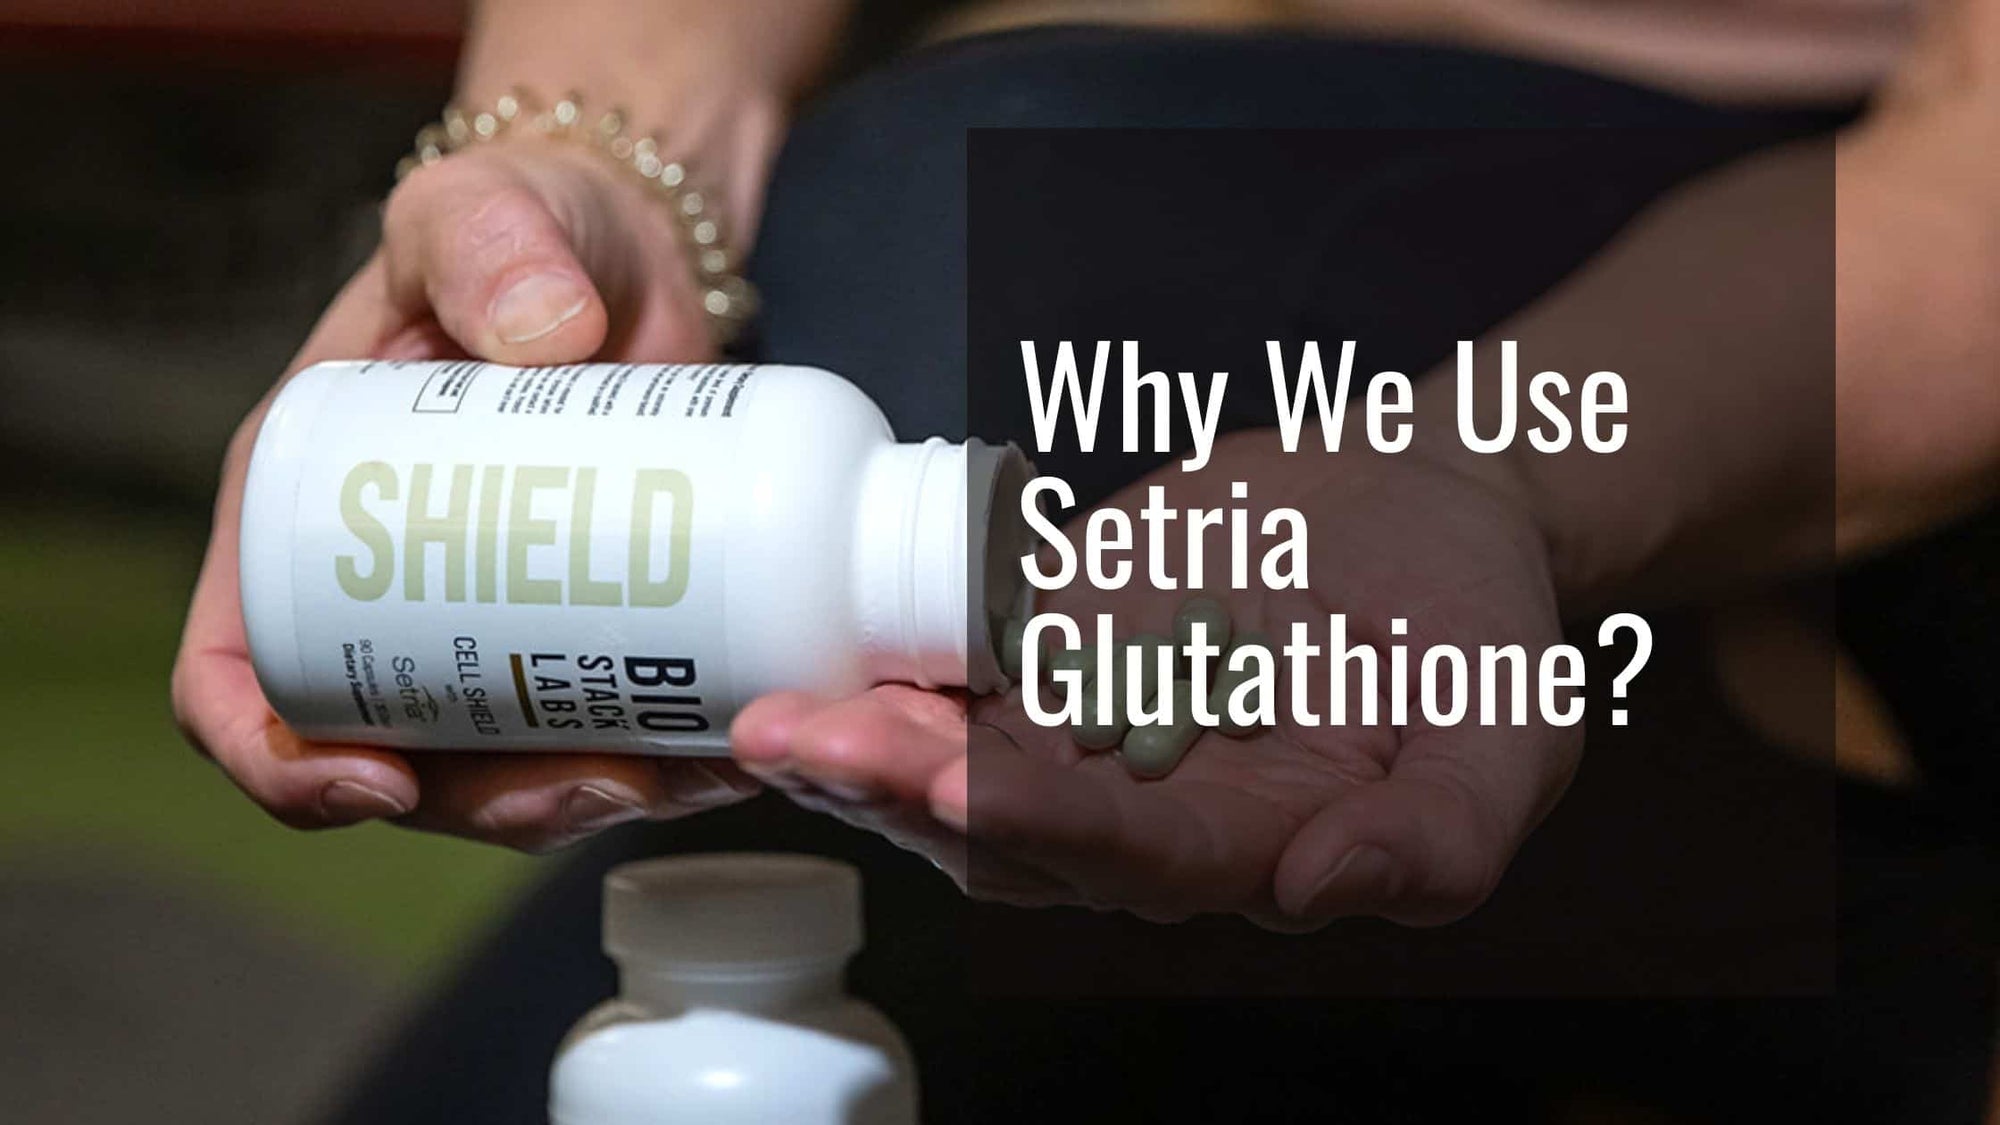 Why we choose setria glutathione